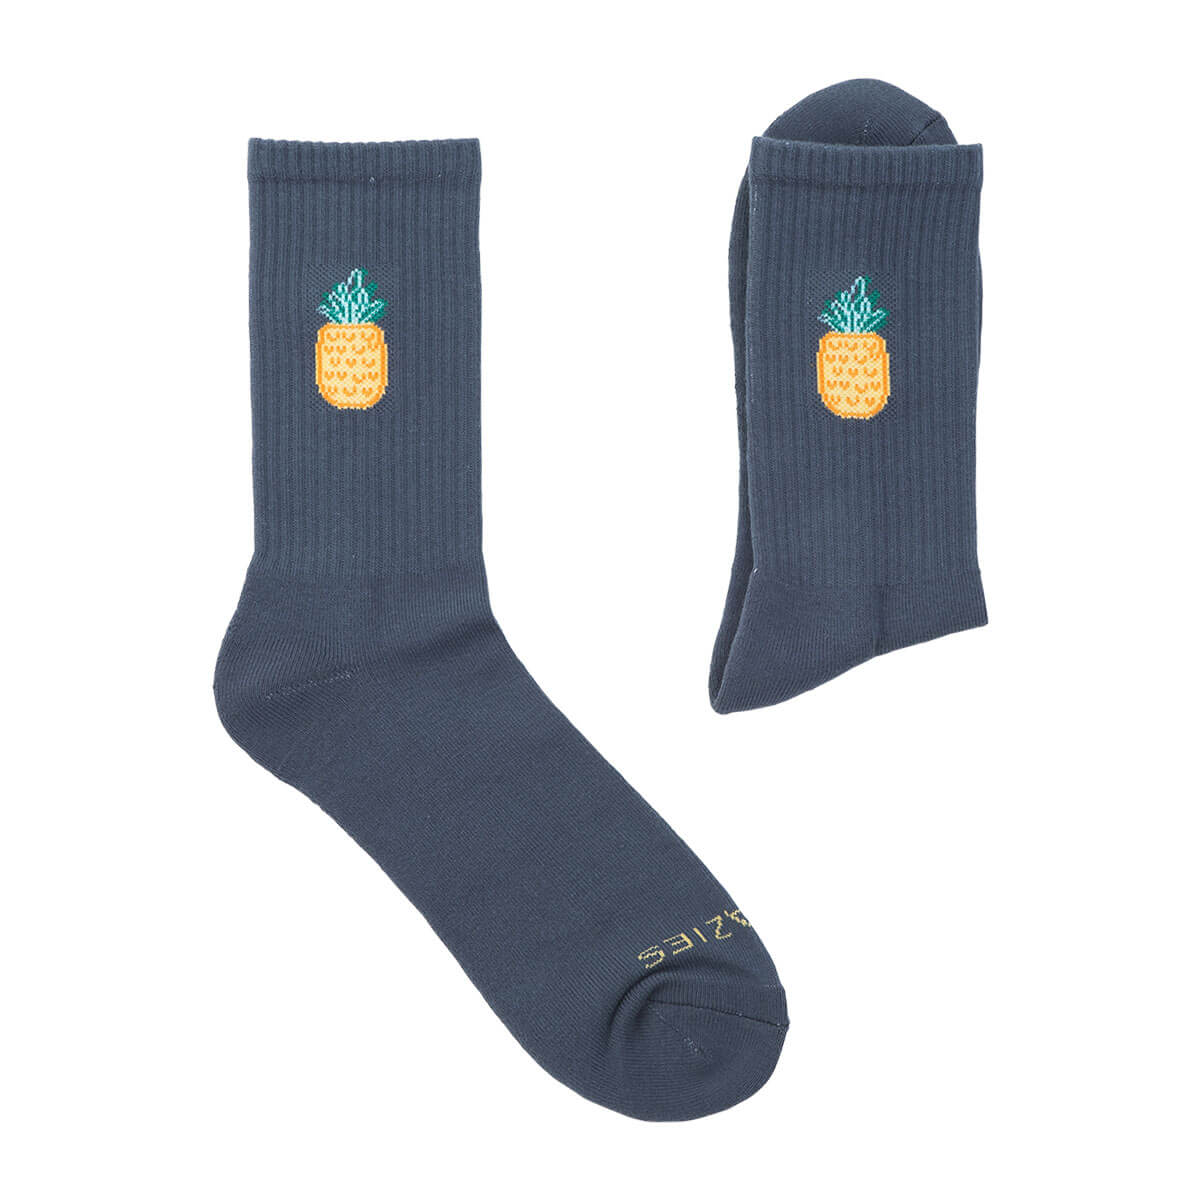 Socks - Steel Pineapple